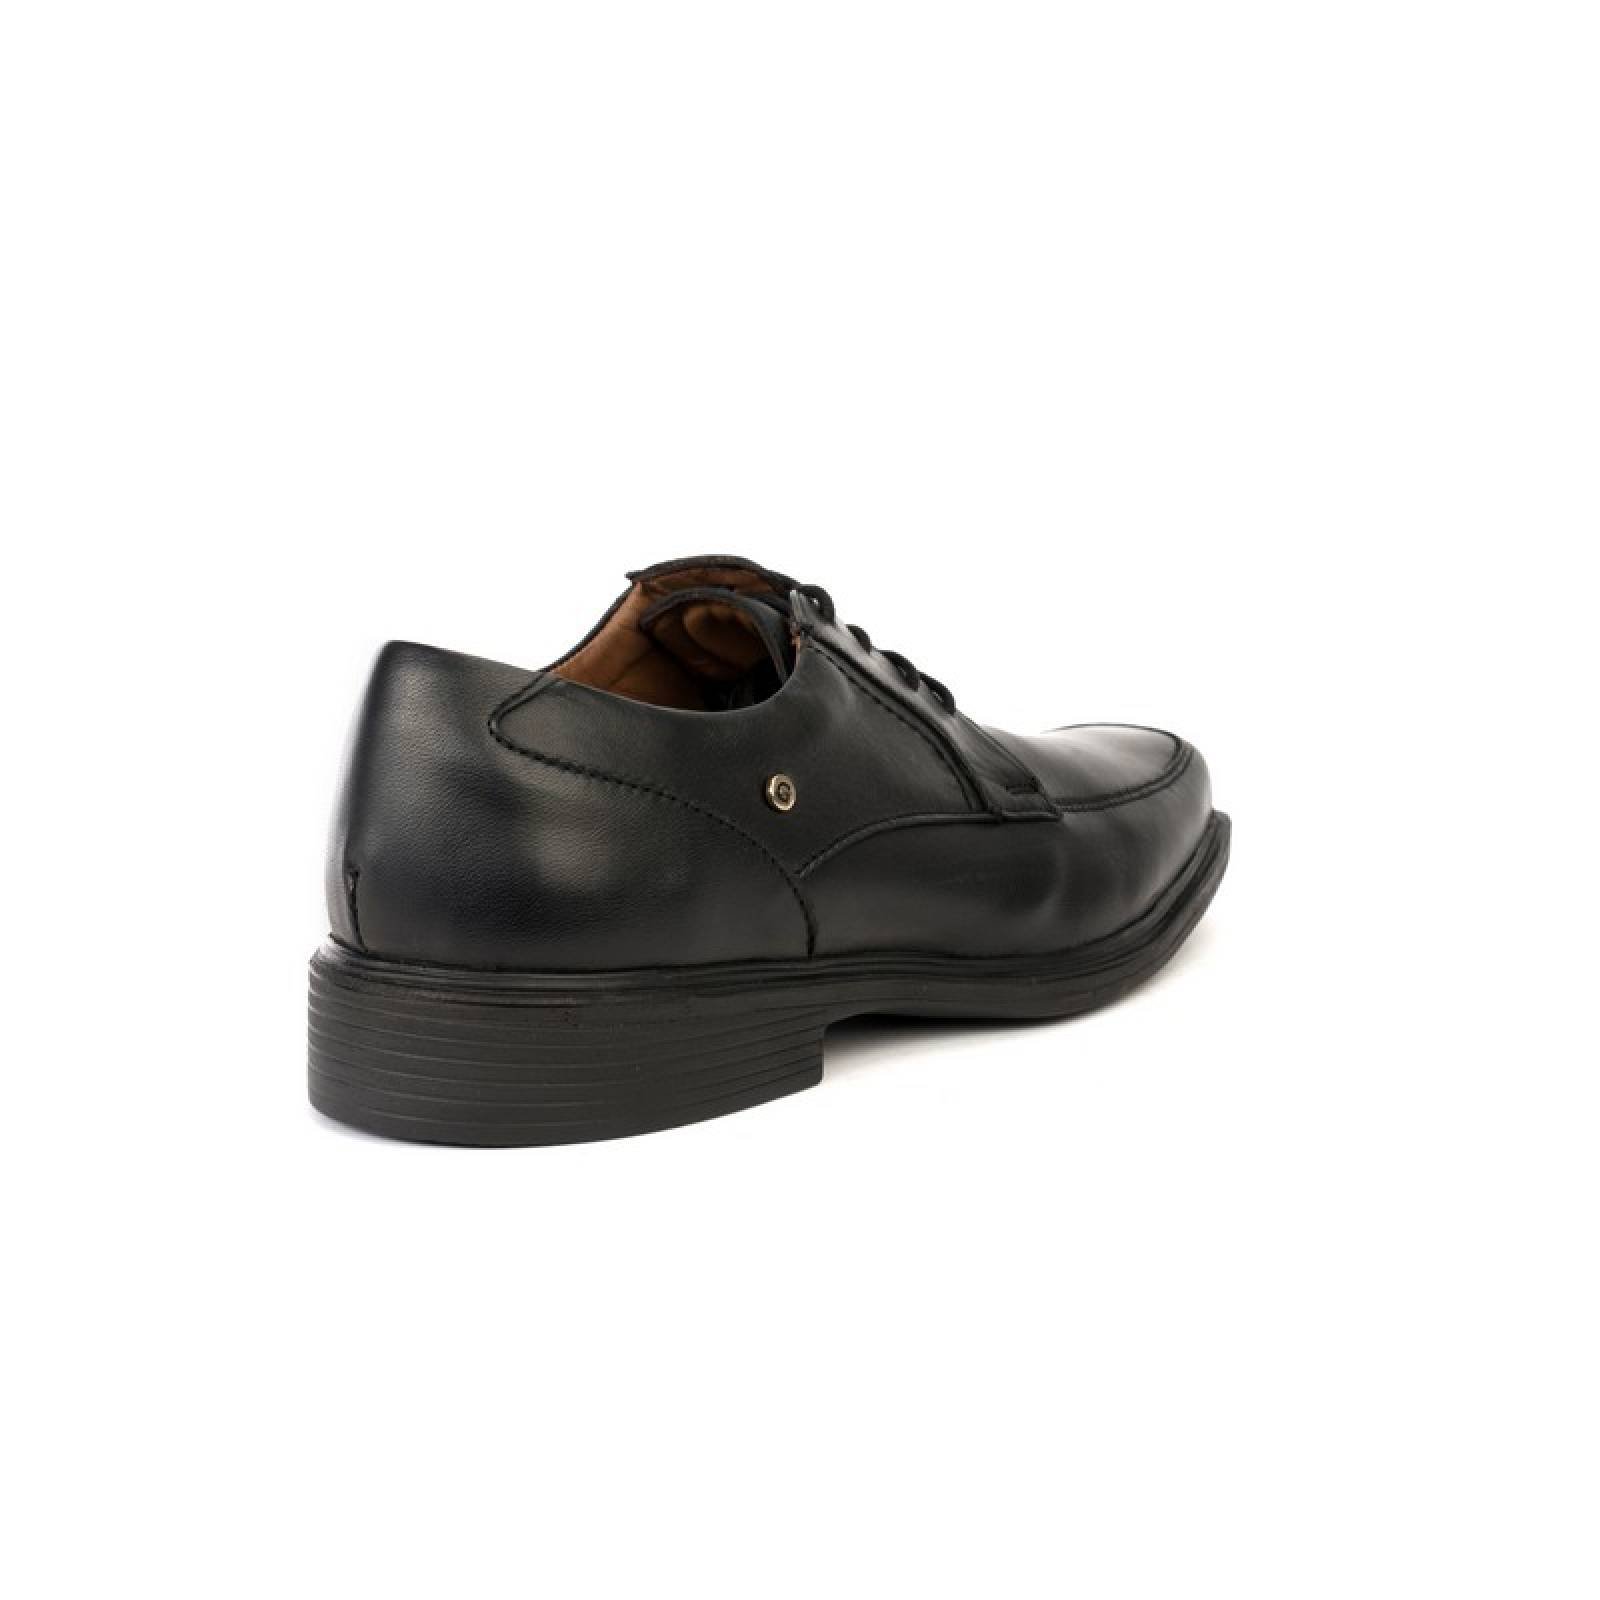 Jarking - Zapato Formal Negro con Agujeta y Plantilla Memory Foam para Caballero